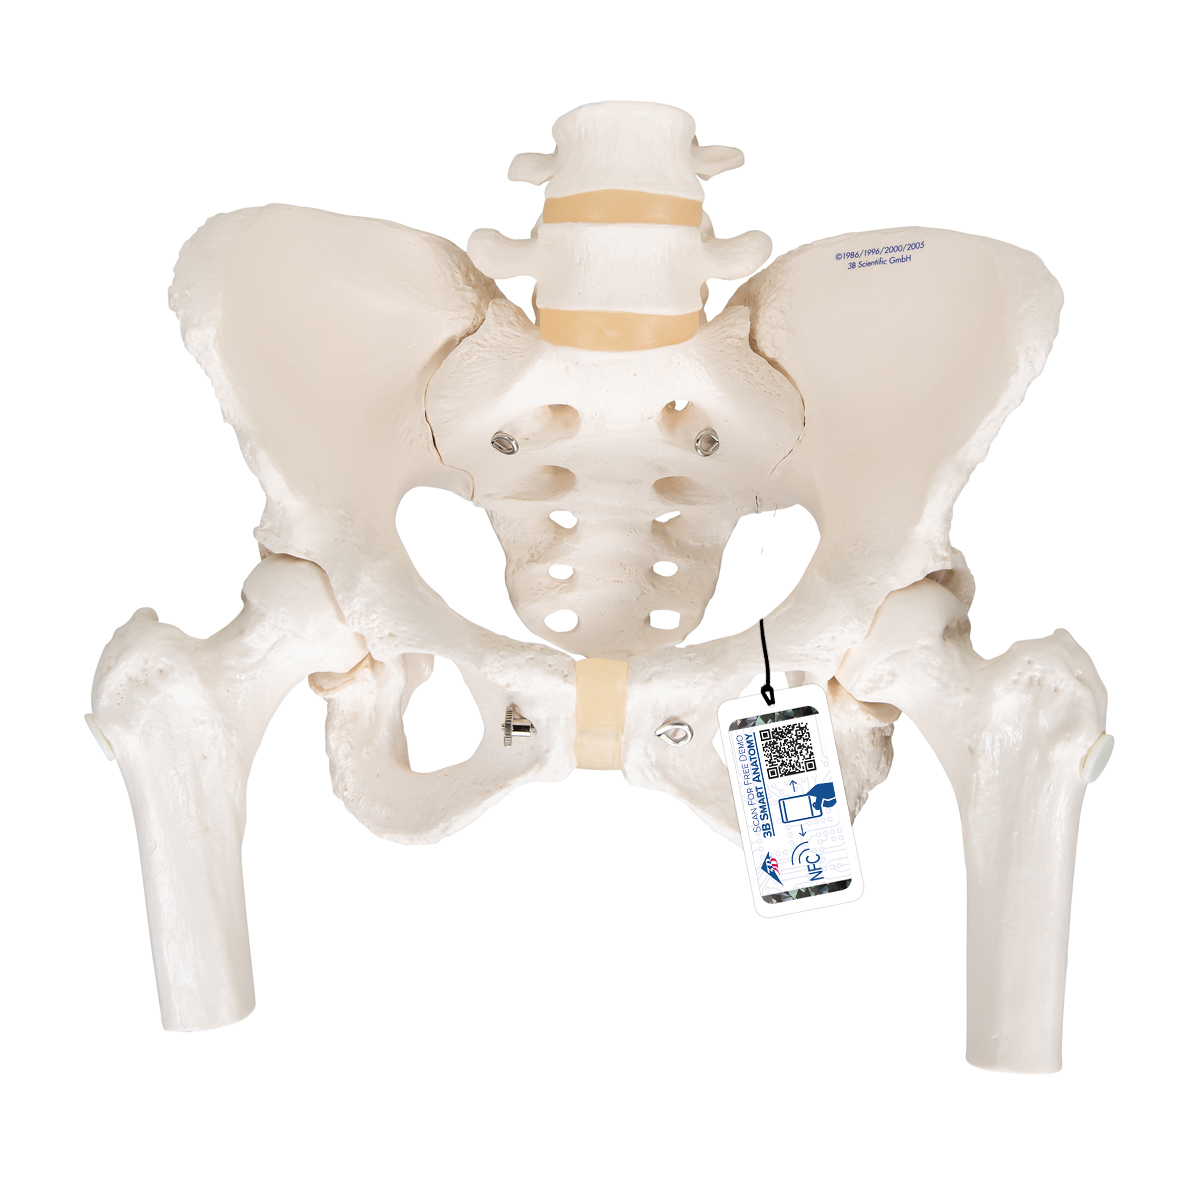 Becken-Skelett Modell, weiblich, mit Oberschenkelstümpfen - 3B Smart Anatomy, Bestellnummer 1000135, A62, 3B Scientific